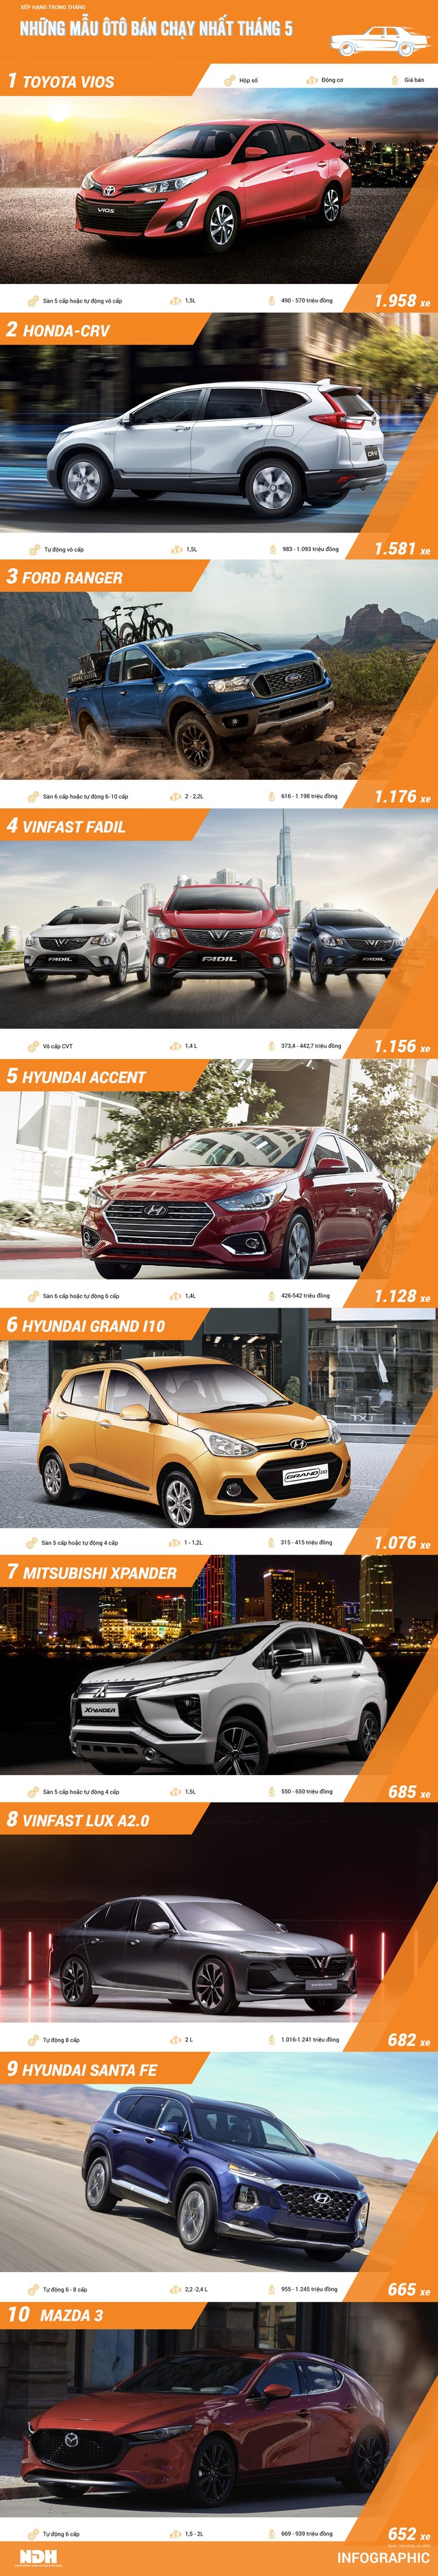 Top ôtô bán chạy tháng 5: Lần đầu 2 mẫu xe VinFast góp mặt - Ảnh 1.